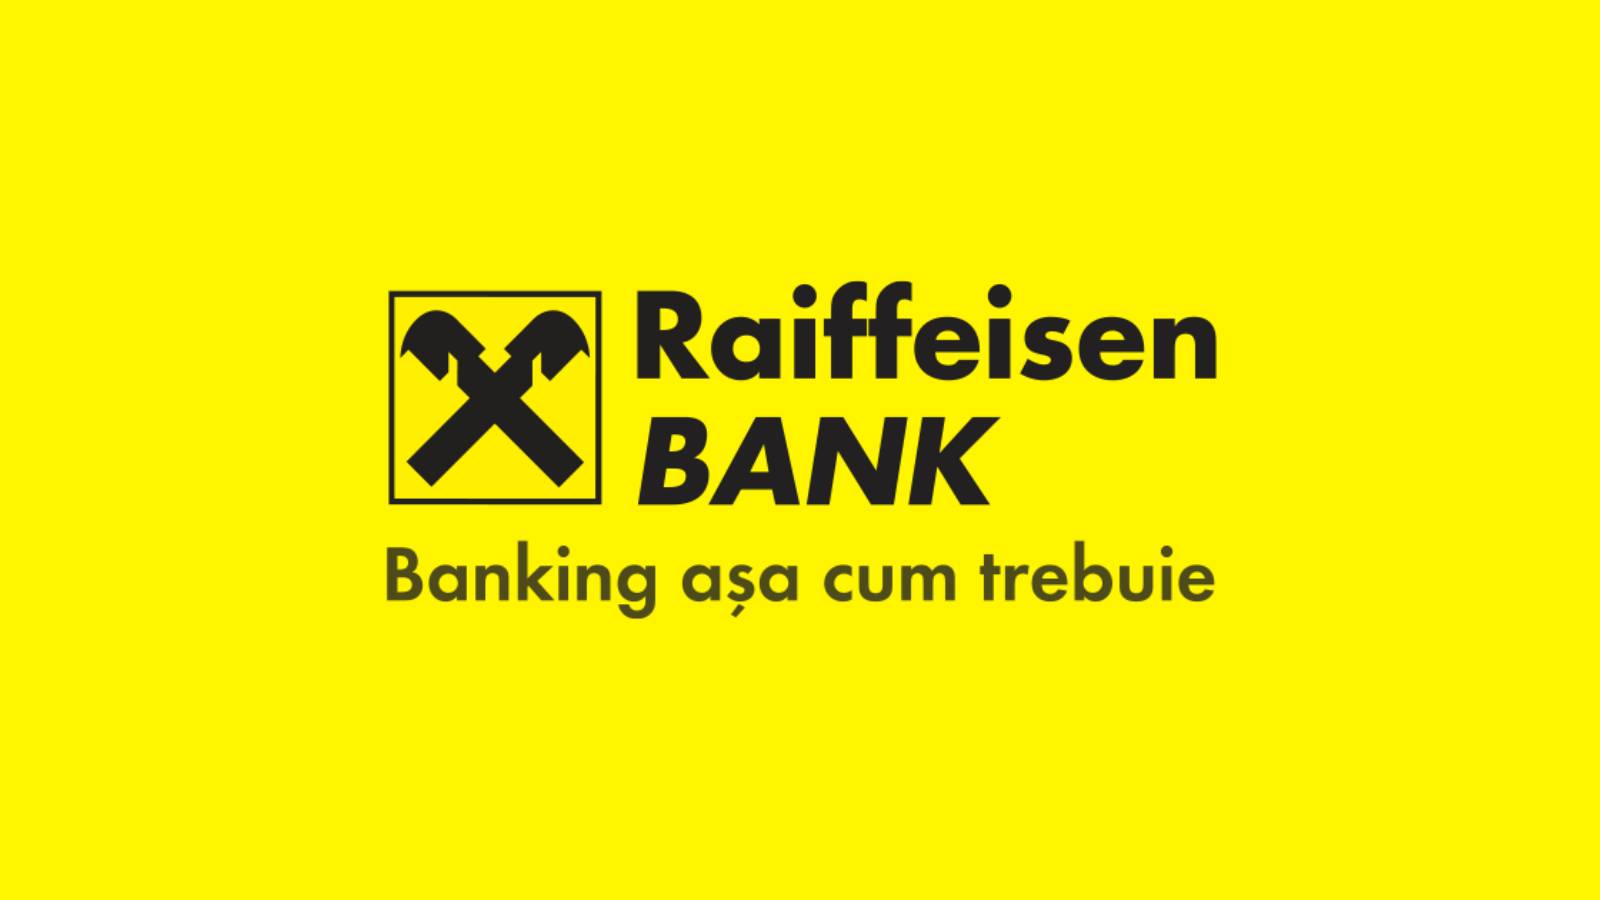 Raiffeisen Bank arbete